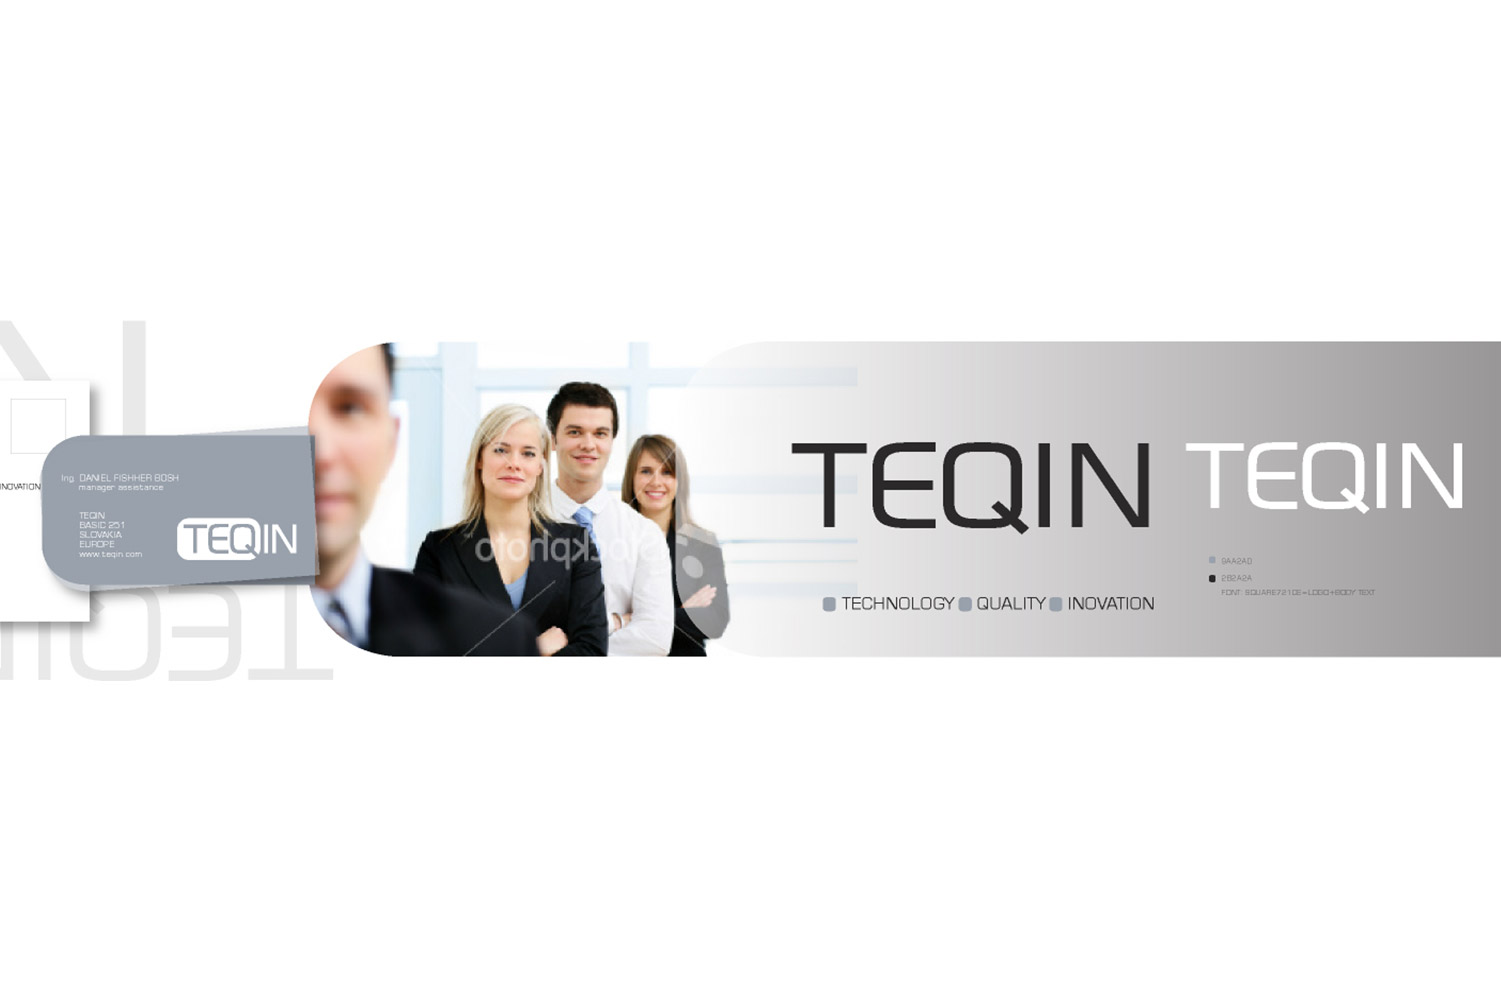 Teqin, corporate identity image